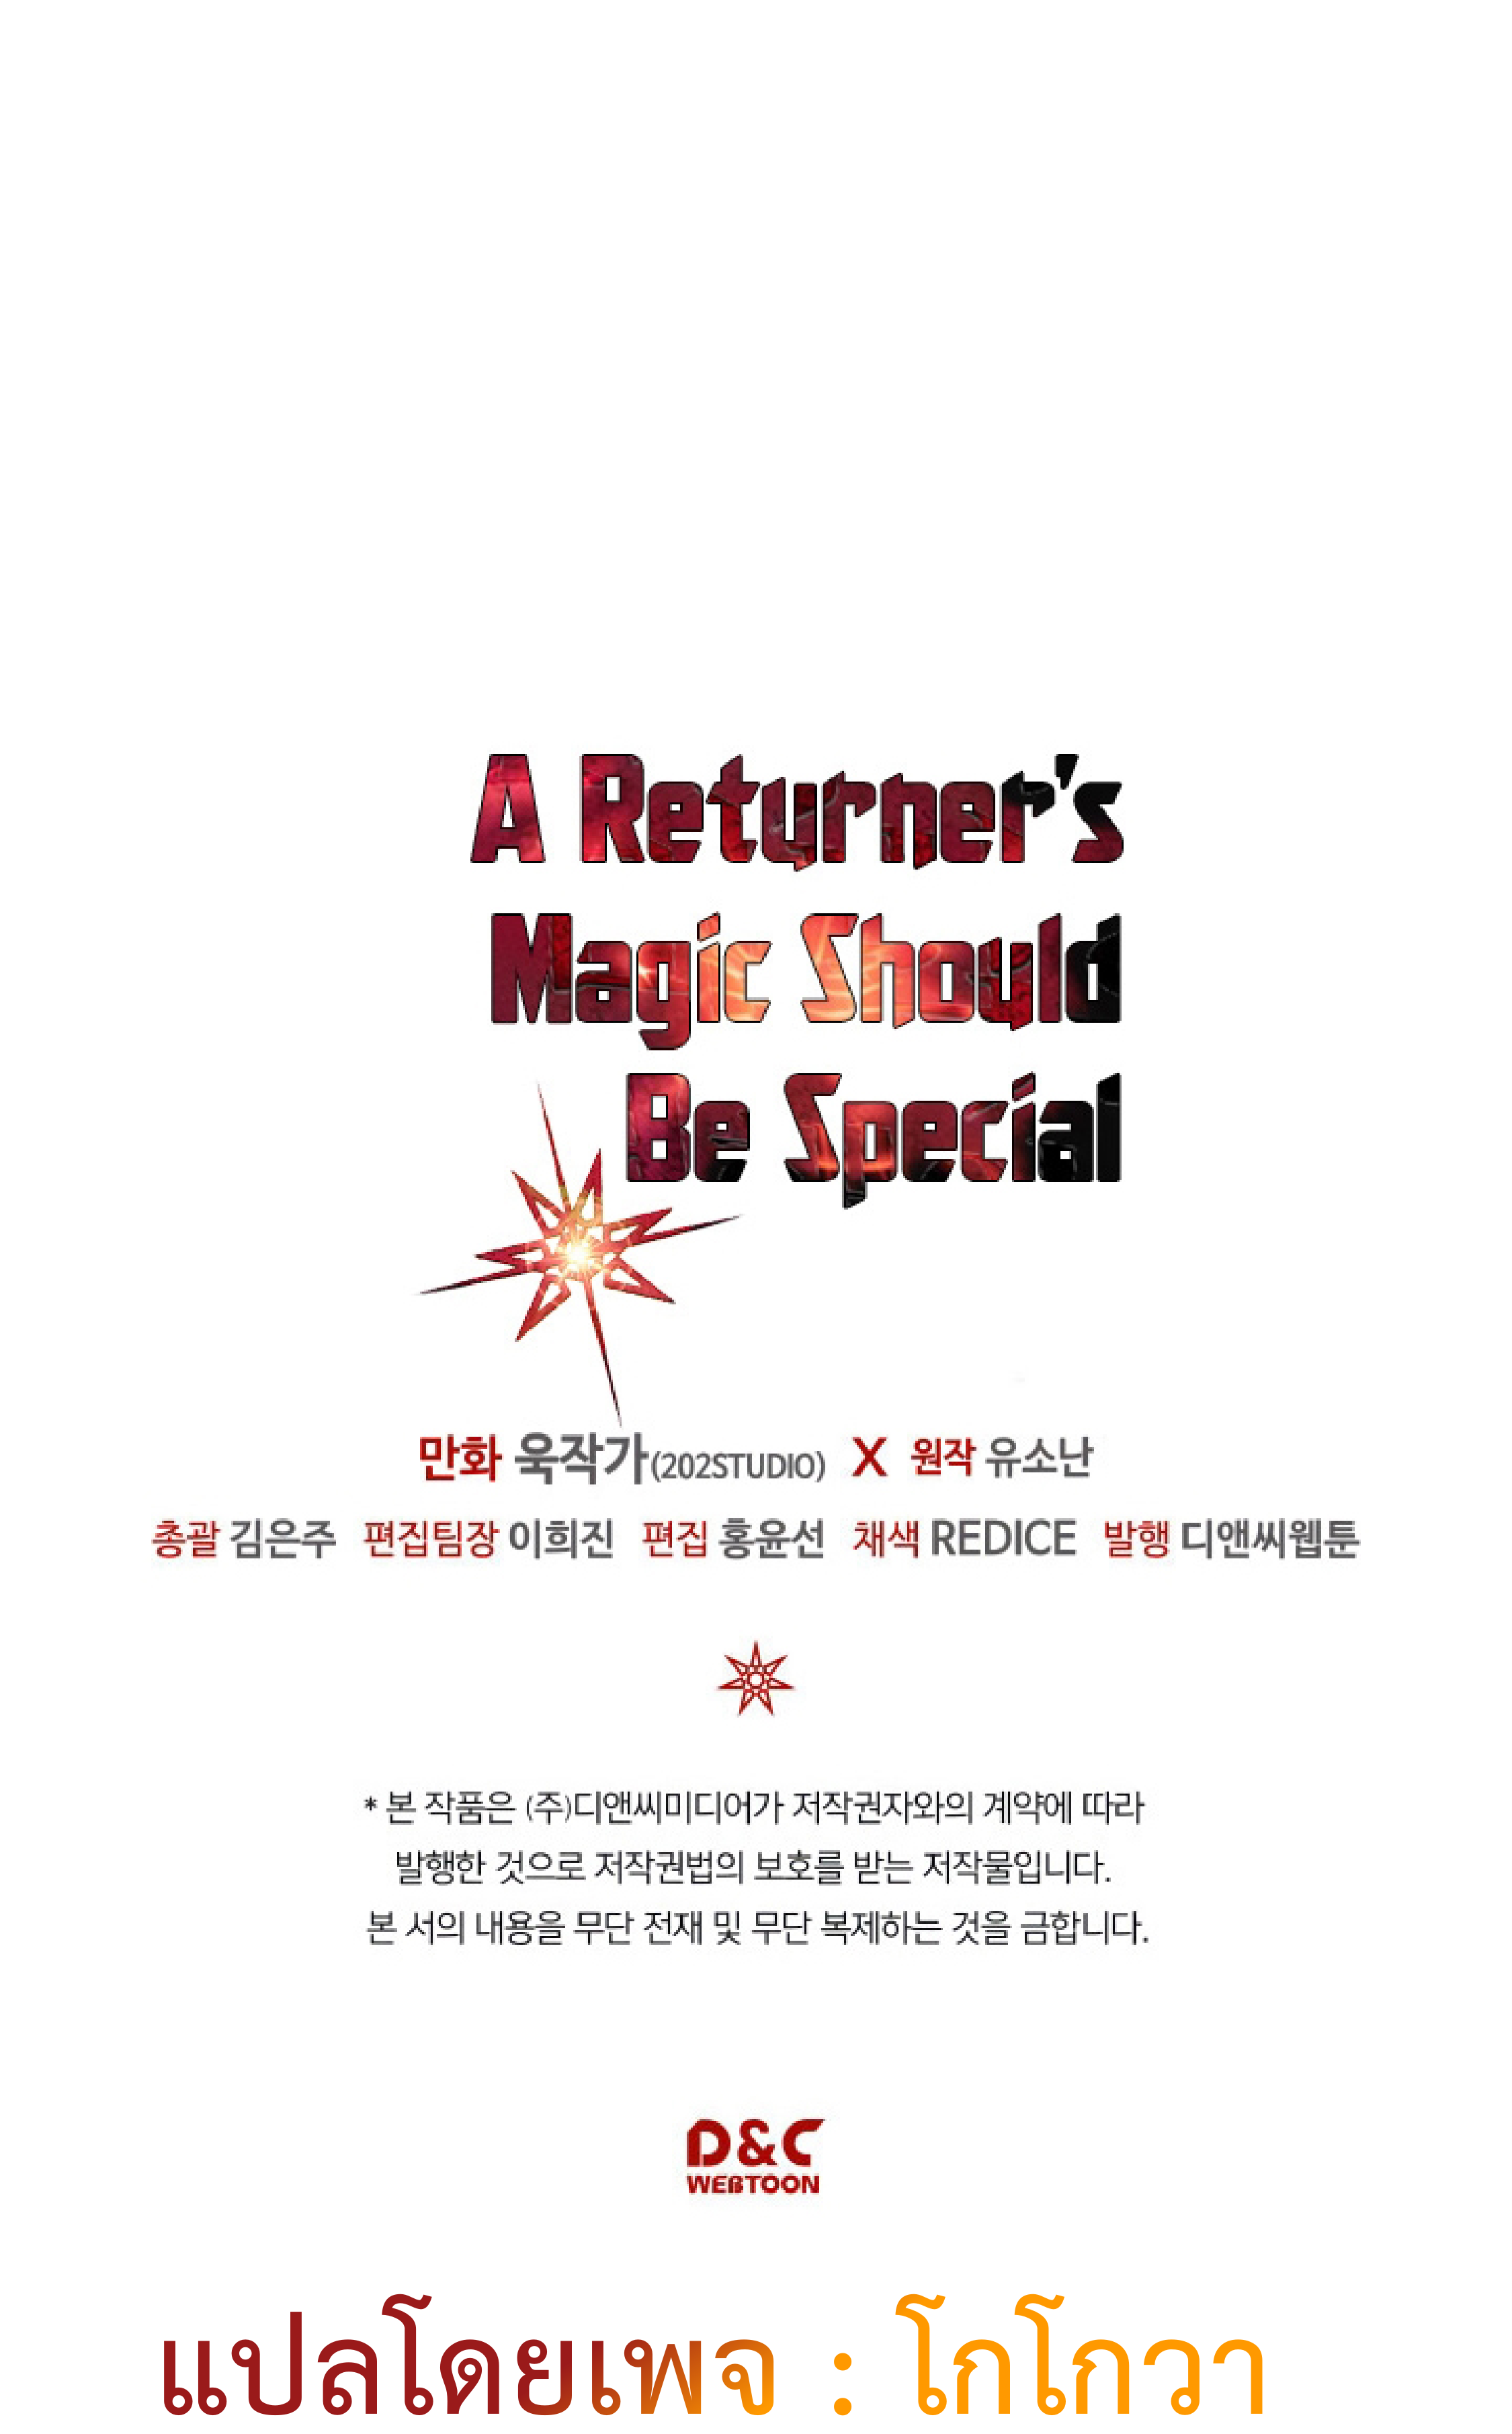 A Returner’s Magic Should Be Special 111 65